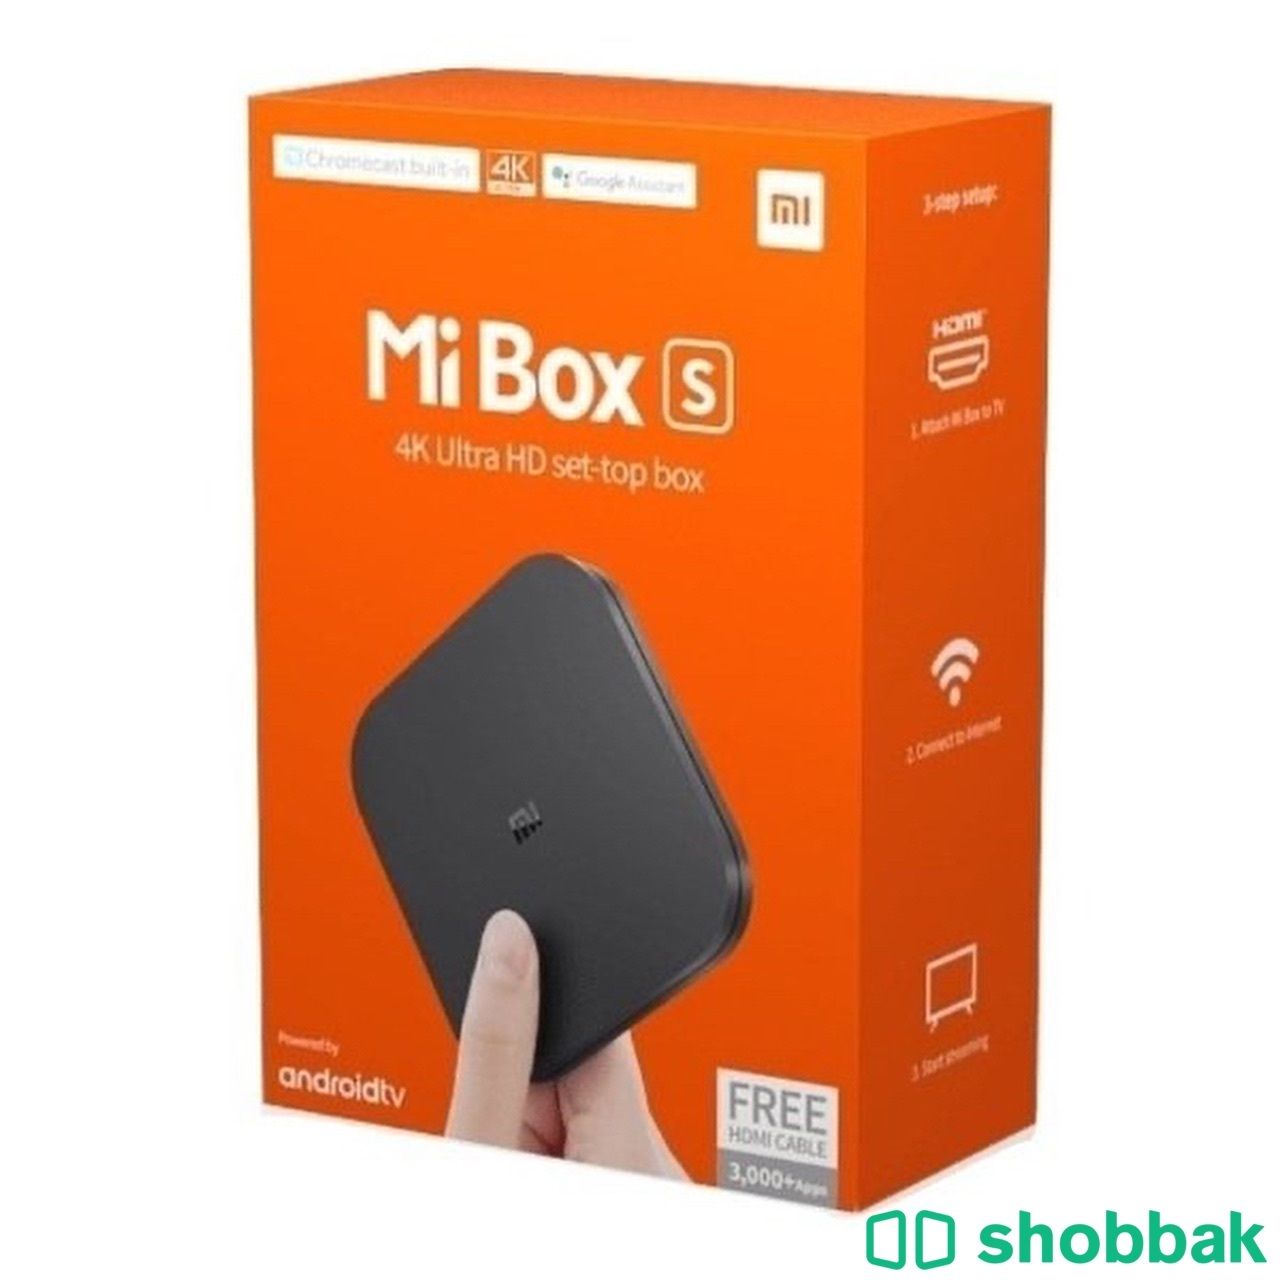 للبيع رسيفر Mi Box معه 3 اشتراكات Shobbak Saudi Arabia